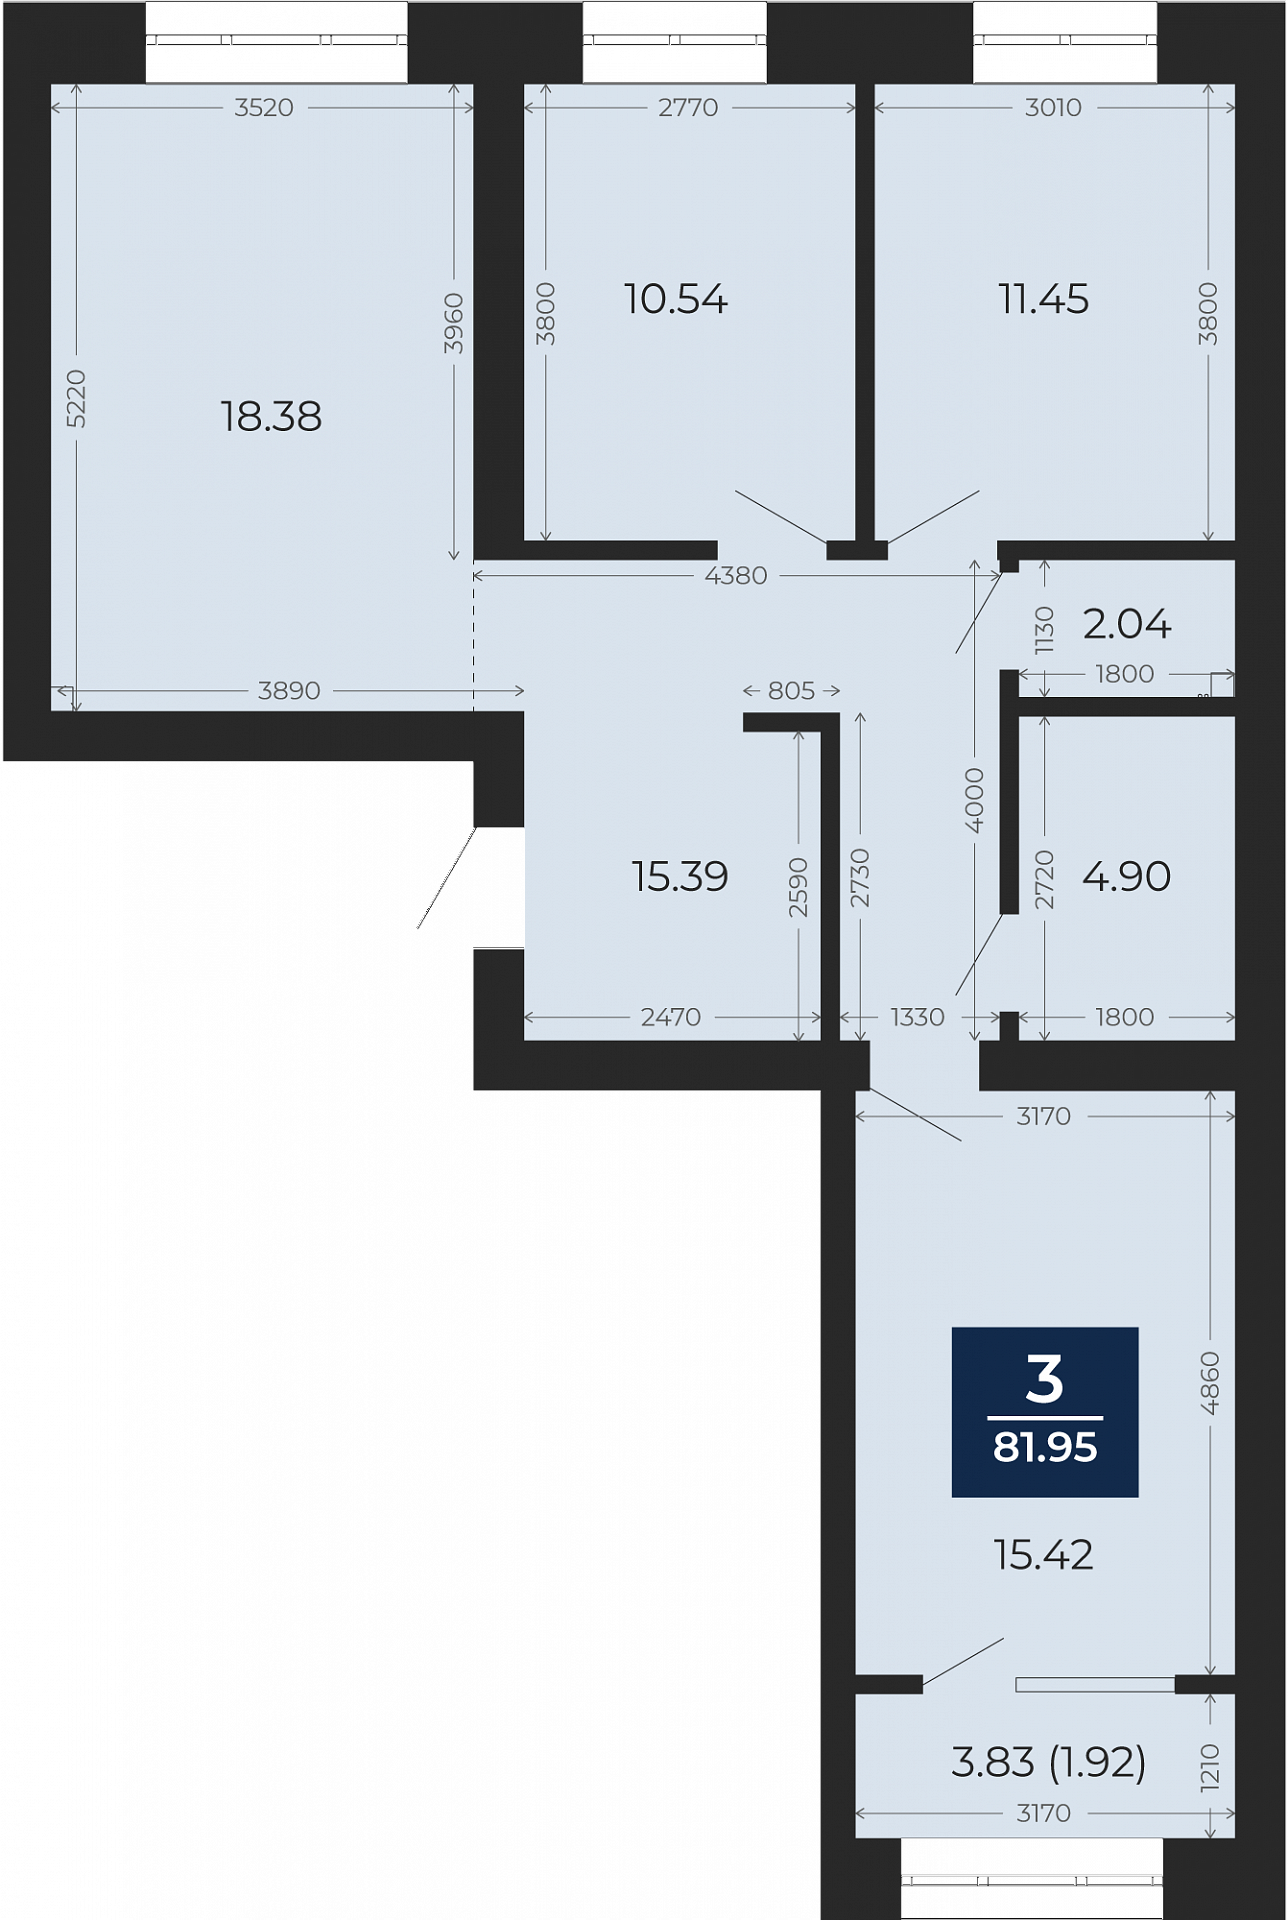 Квартира № 124, 3-комнатная, 81.95 кв. м, 10 этаж